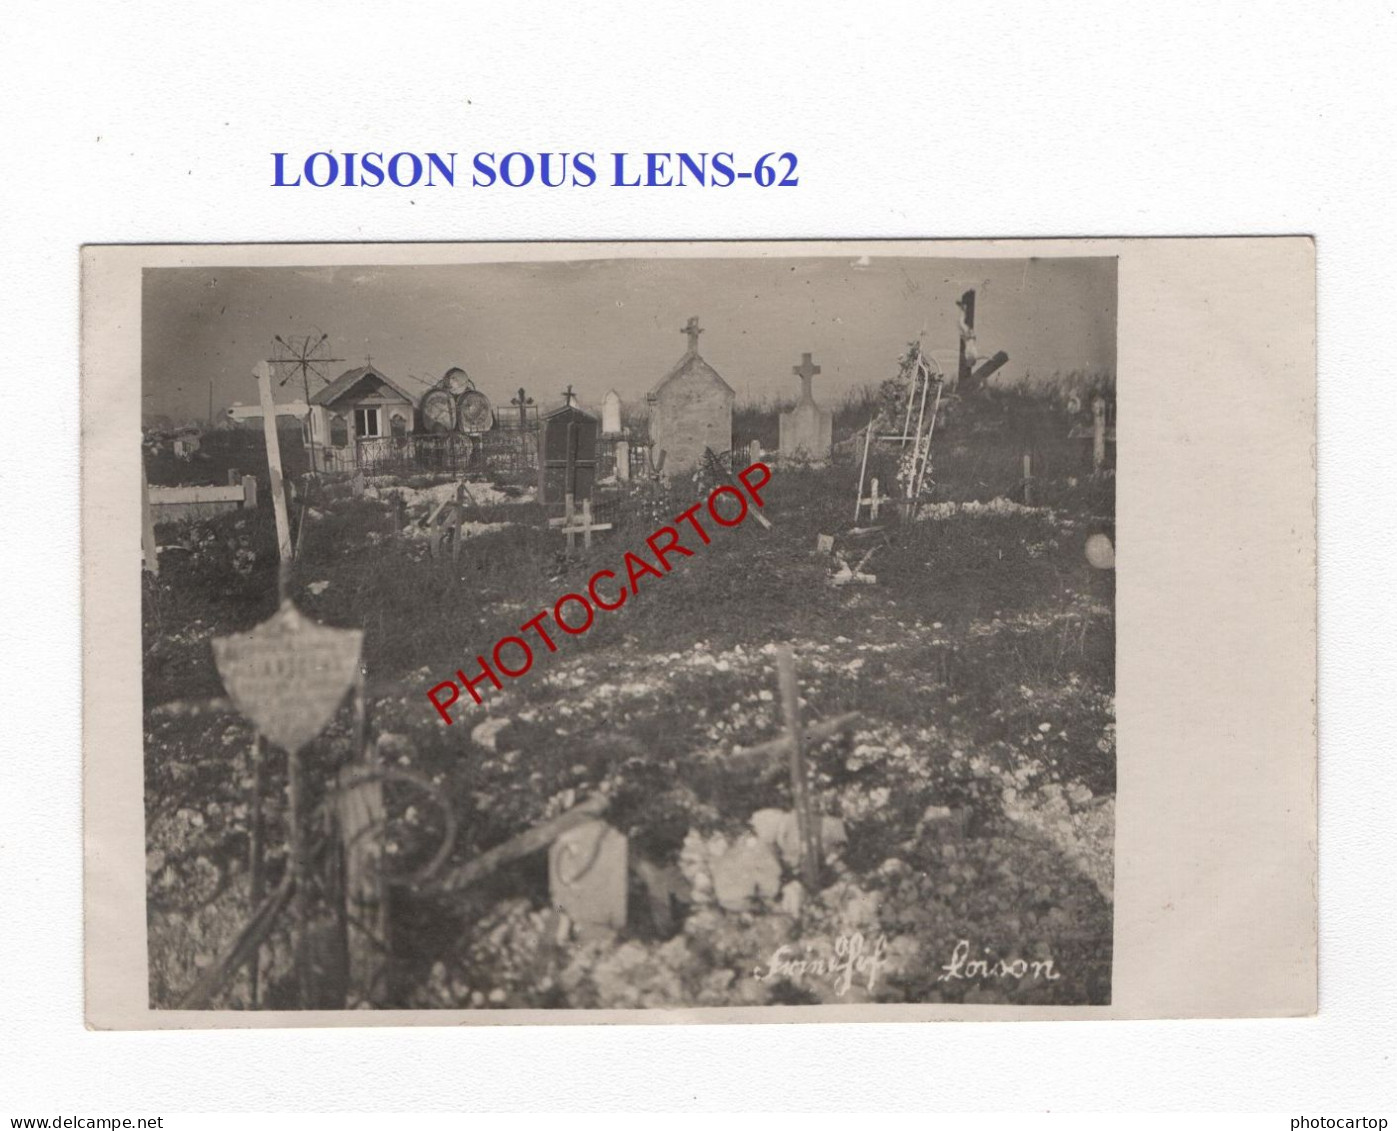 LOISON SOUS LENS-62-Cimetiere-Tombes-CARTE PHOTO Allemande-GUERRE 14-18-1 WK-MILITARIA- - Oorlogsbegraafplaatsen